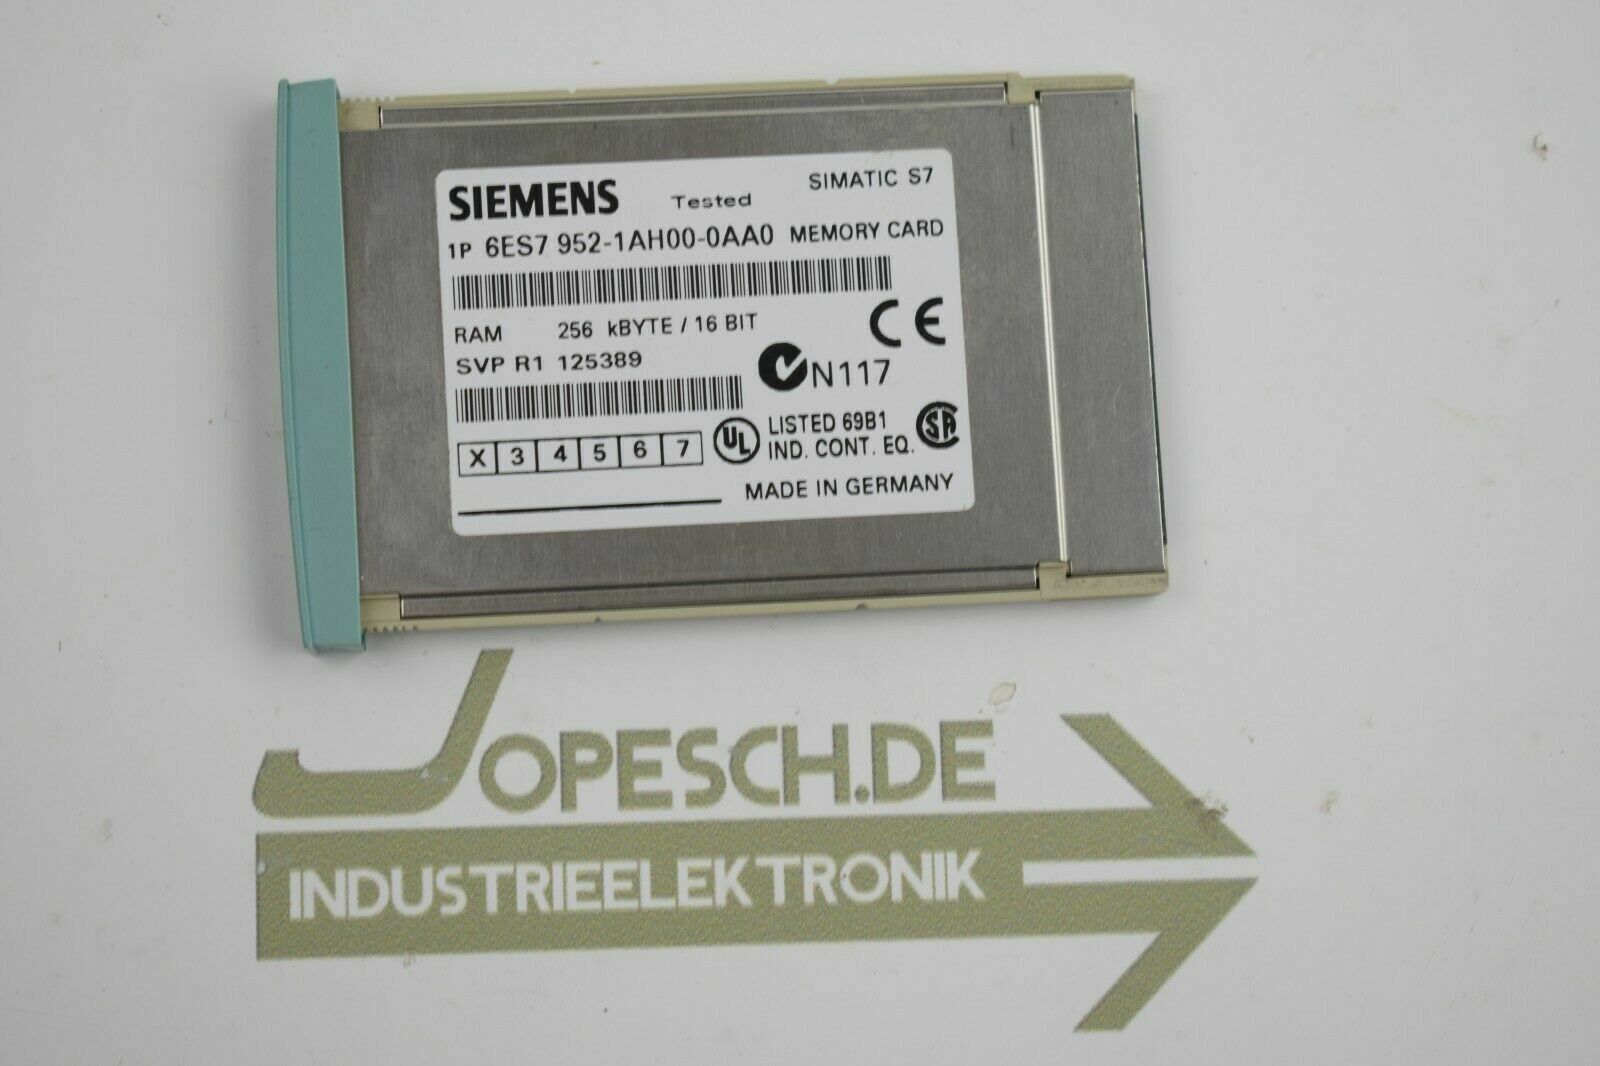 Siemens Simatic S7 Memory Card 256kB 6ES7 952-1AH00-0AA0 (6ES7952-1AH00-0AA0)